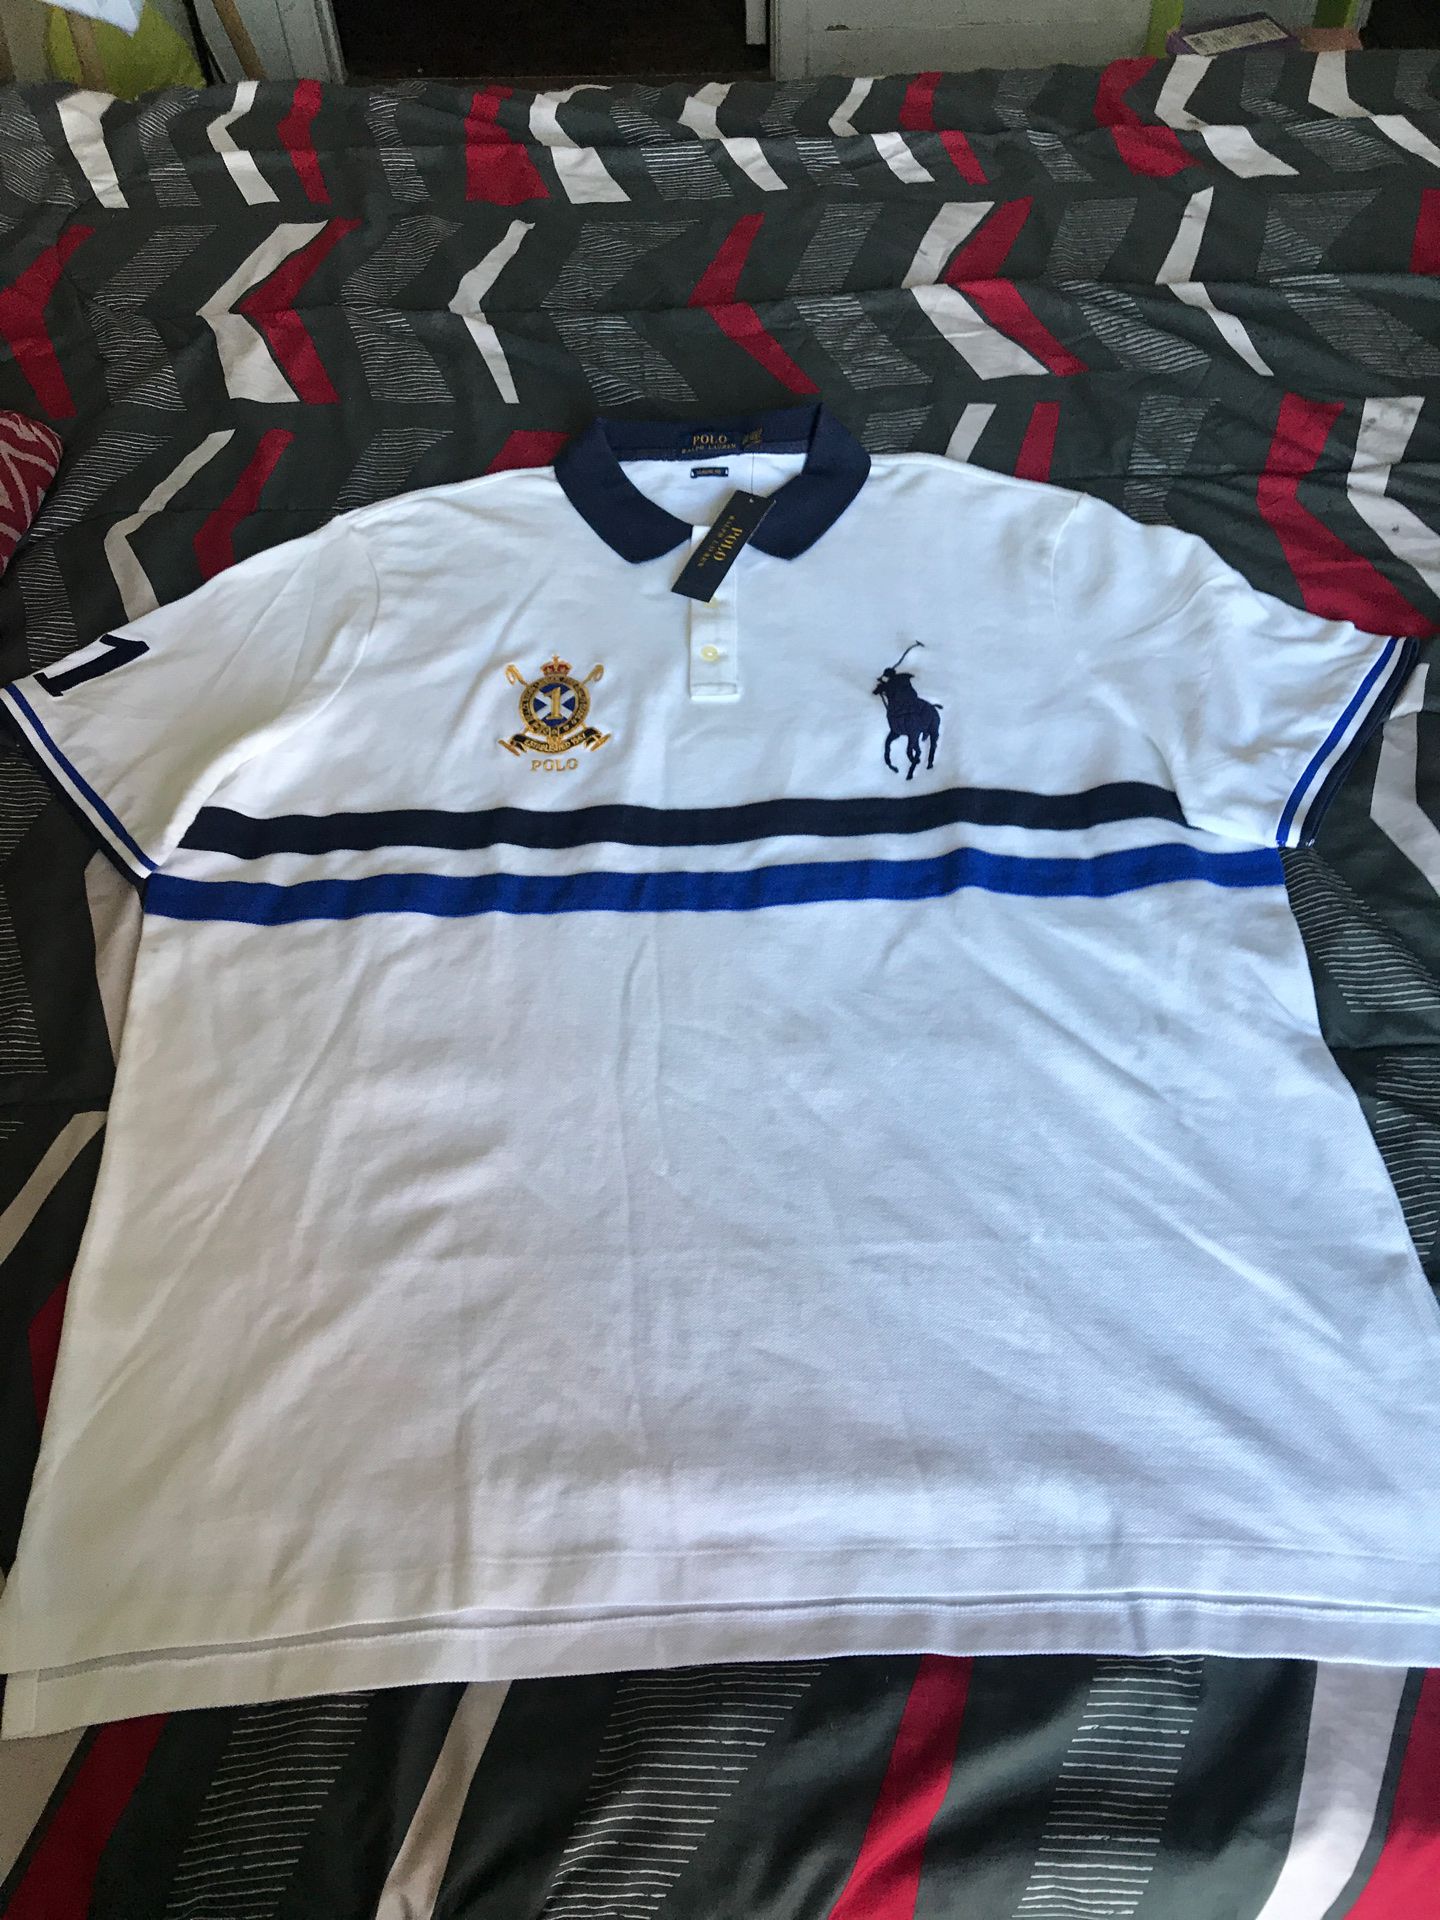 Polo Ralph Lauren shirt $40 size 2XL